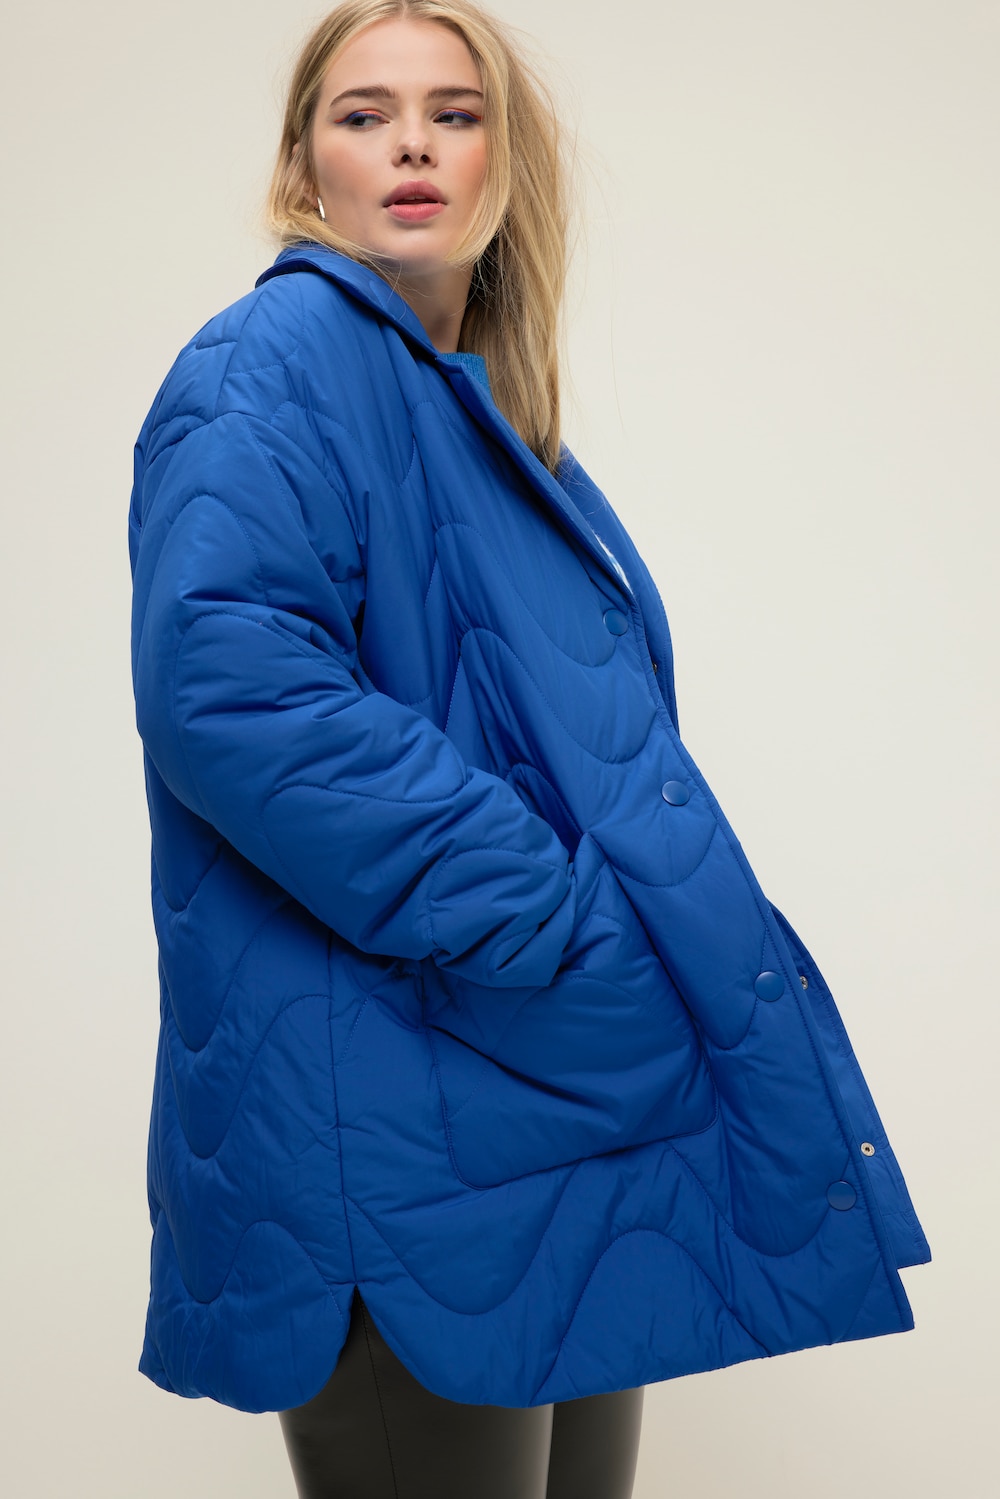 Grote Maten Gewatteerde jas, Dames, blauw, Maat: 50/52, Polyester, Studio Untold